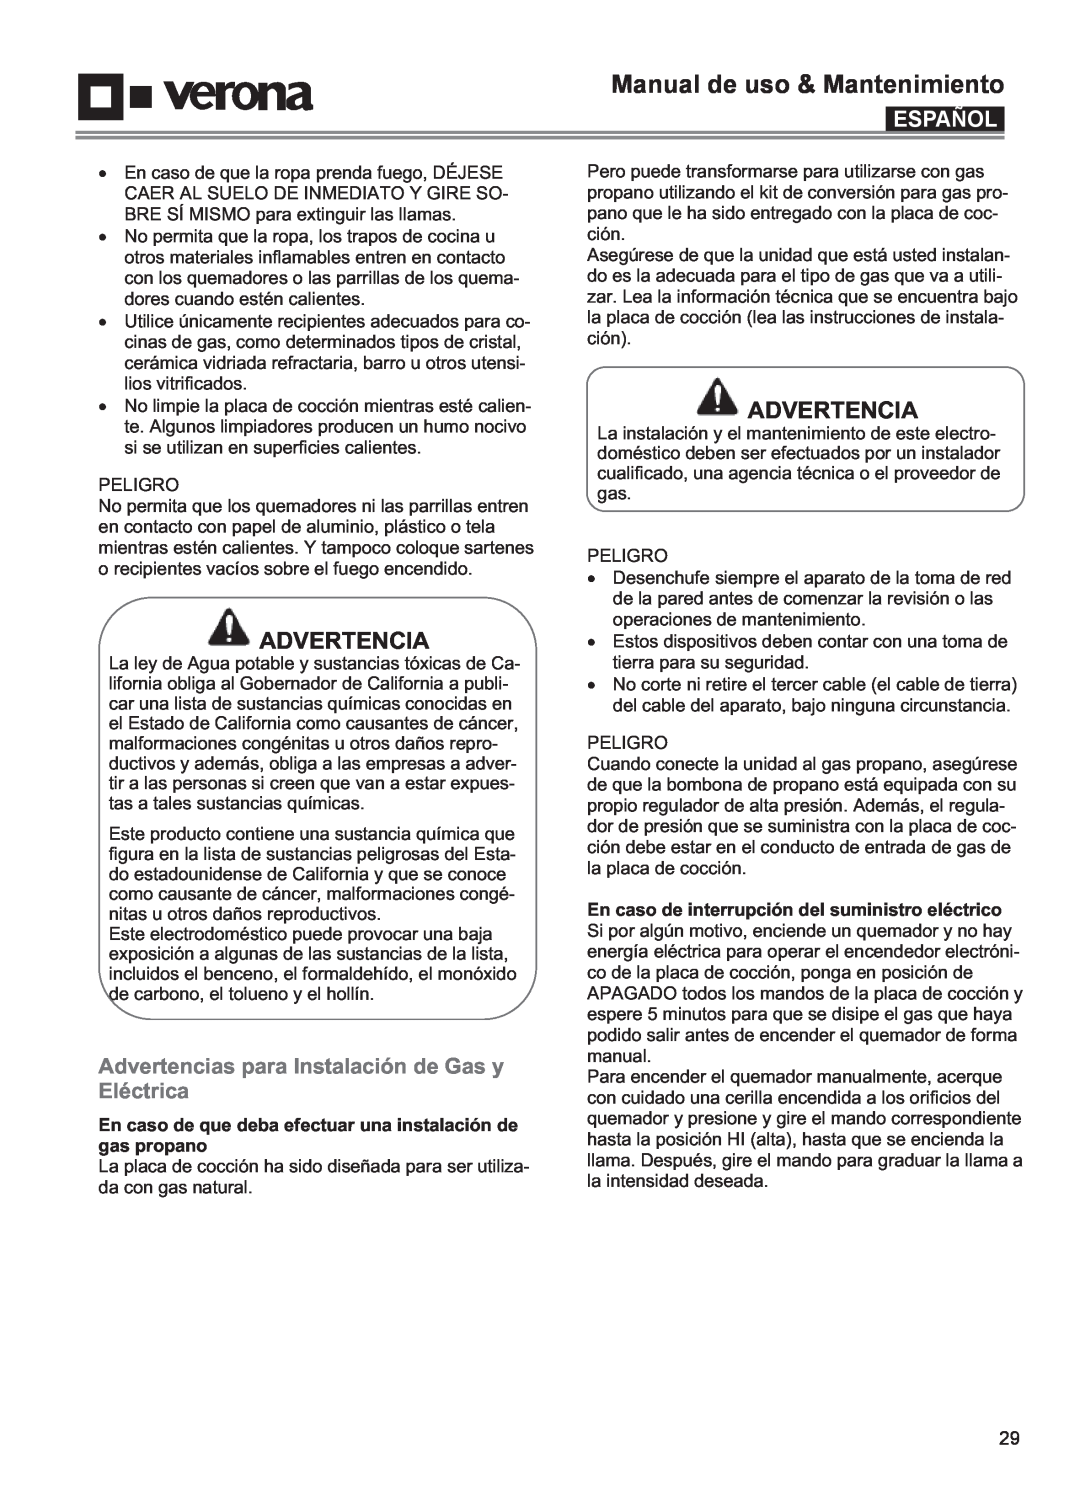 Verona VECTGMS304SS, VECTGMS365SS Advertencias para Instalación de Gas y Eléctrica, Manual de uso & Mantenimiento, Español 